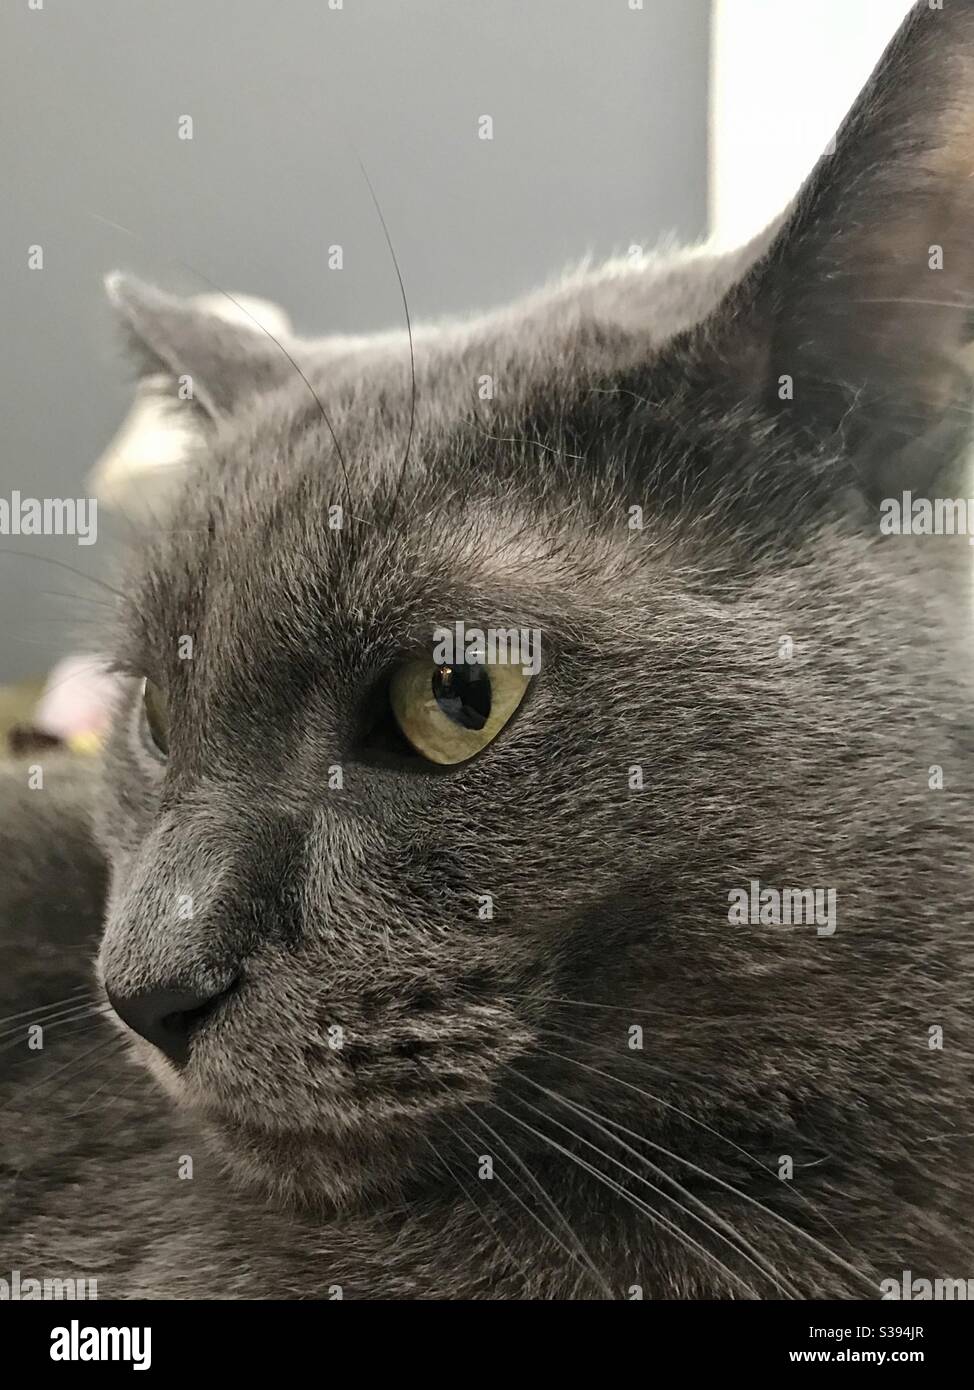 Portrait du magnifique chat bleu russe aux yeux verts magnifiques, sauvé comme un petit chaton, une femelle complètement vettée qui vit maintenant comme compagnon d'intérieur, chat gris domestique ou américain de shorthair Banque D'Images